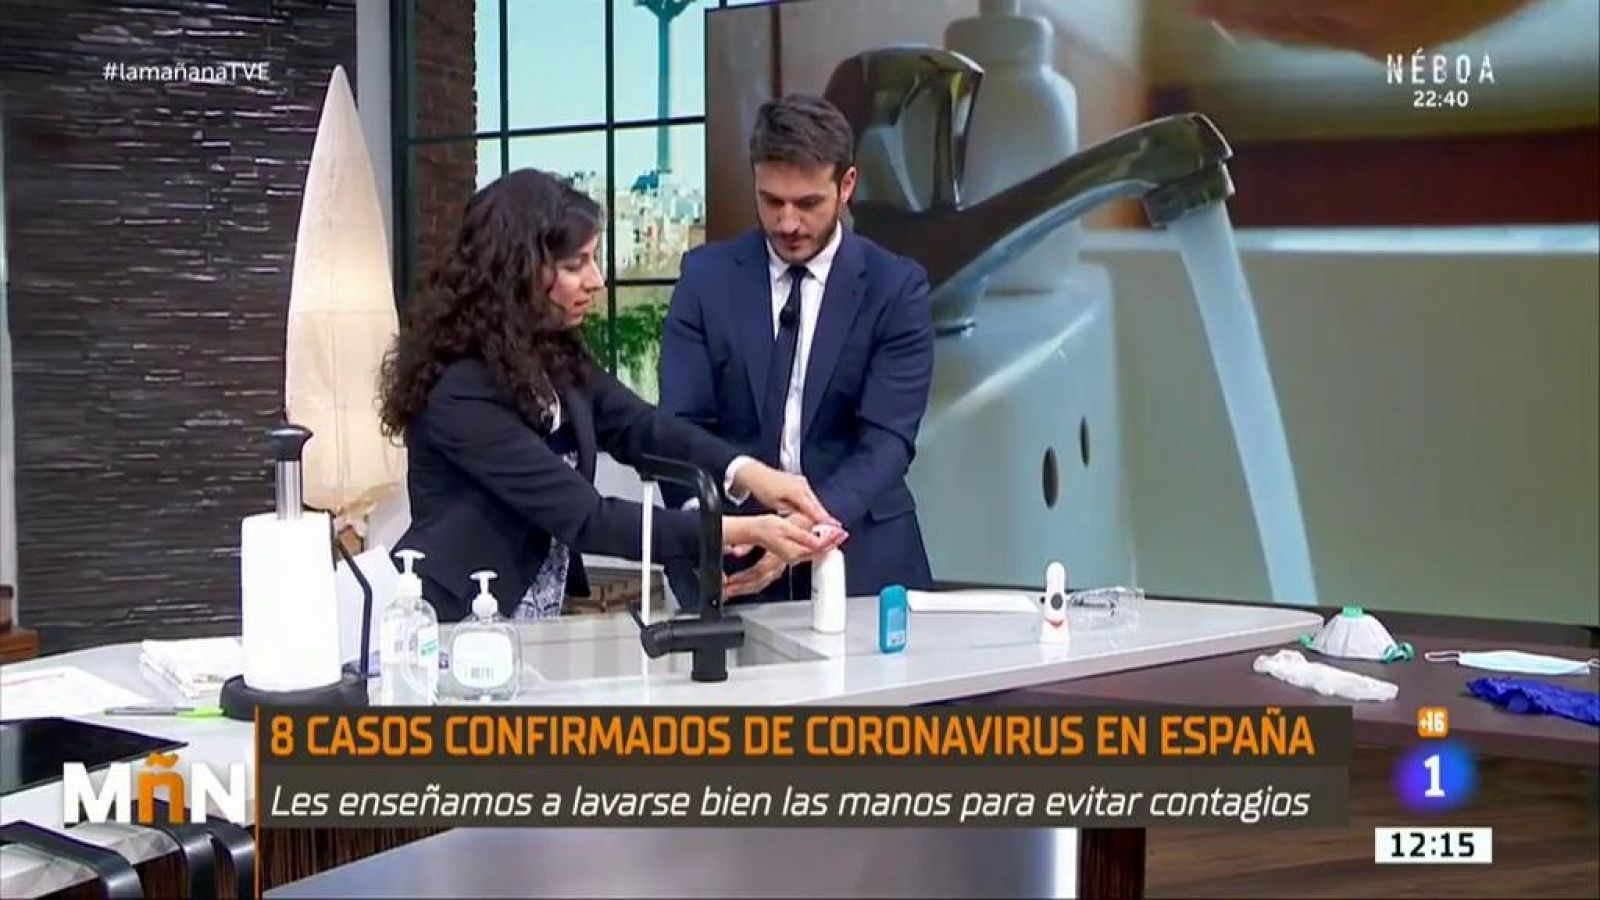 La Mañana - ¿Cómo lavarse las manos de forma efectiva para evitar el coronavirus?